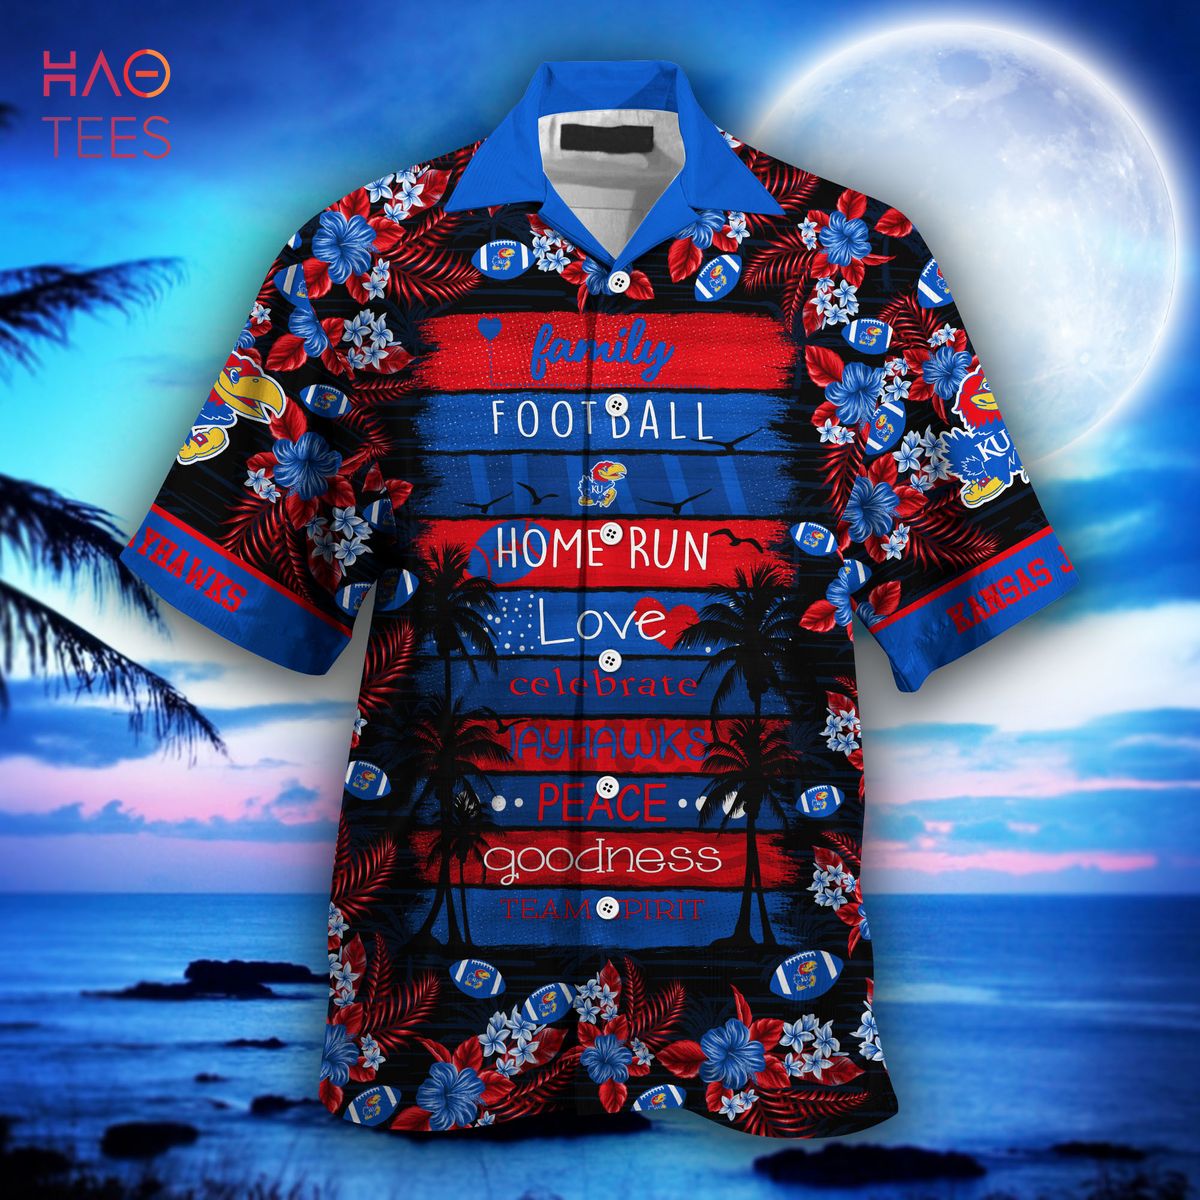 NBA Atlanta Hawks Hawaiian Shirt Summer Gift For Men And Women -  Freedomdesign